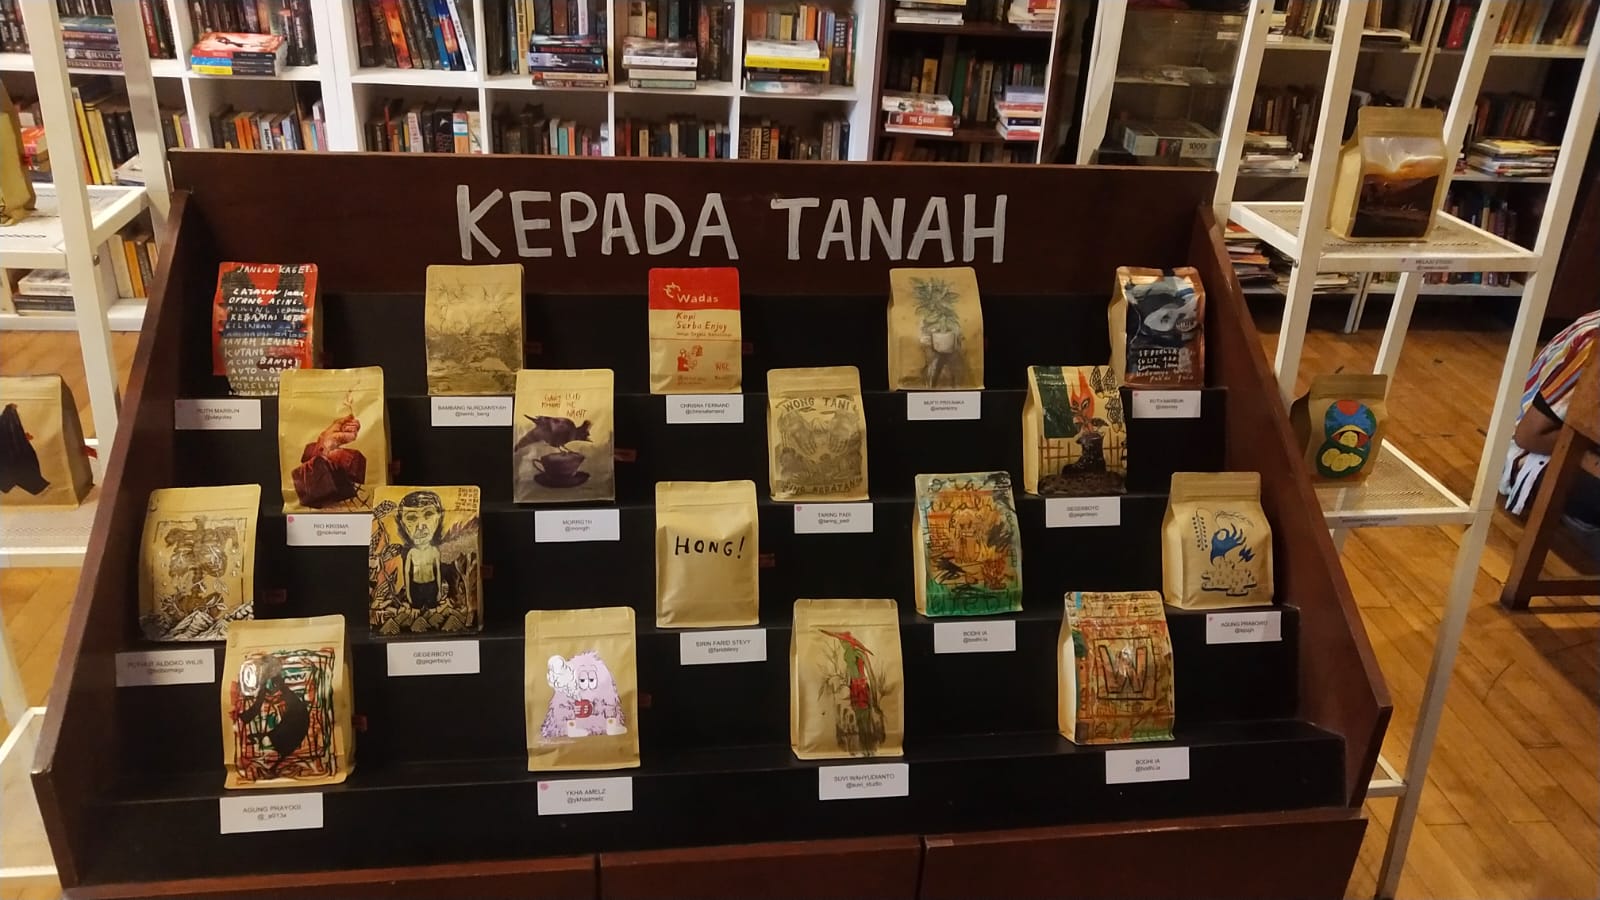 Foto menunjukkan pameran kopi yang dilaksanakan Kepada Tanah di Bandung, untuk menyuarakan isu Desa Wadas. Ada 18 bungkus kopi yang kemasannya sudah didesain oleh 22 seniman, dari total 24 bungkus kopi yang menjadi karya seni.